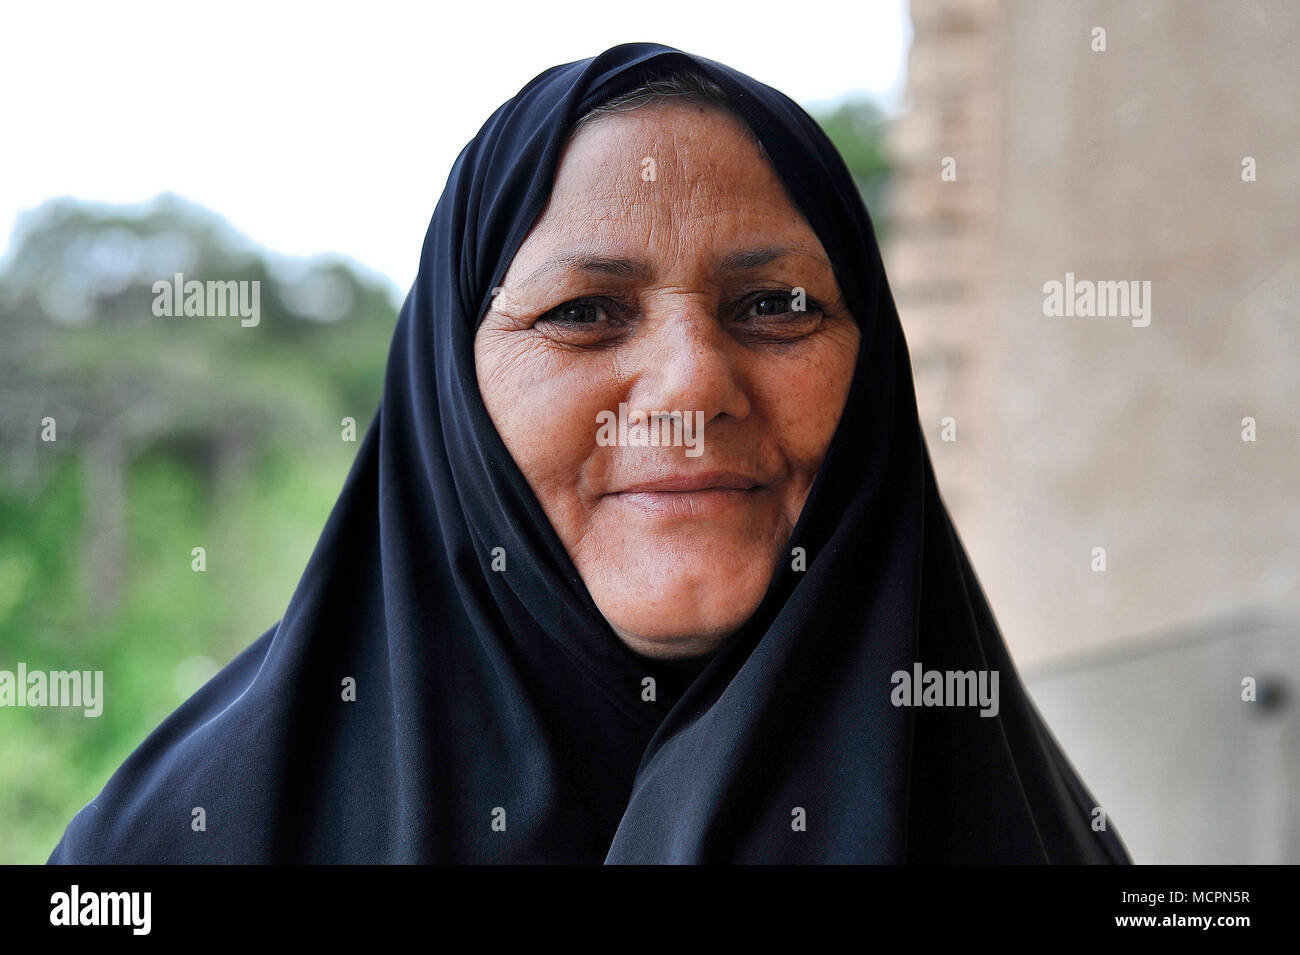 Ritratto di donna con velo islamico, Esfahan - Iran Foto Stock